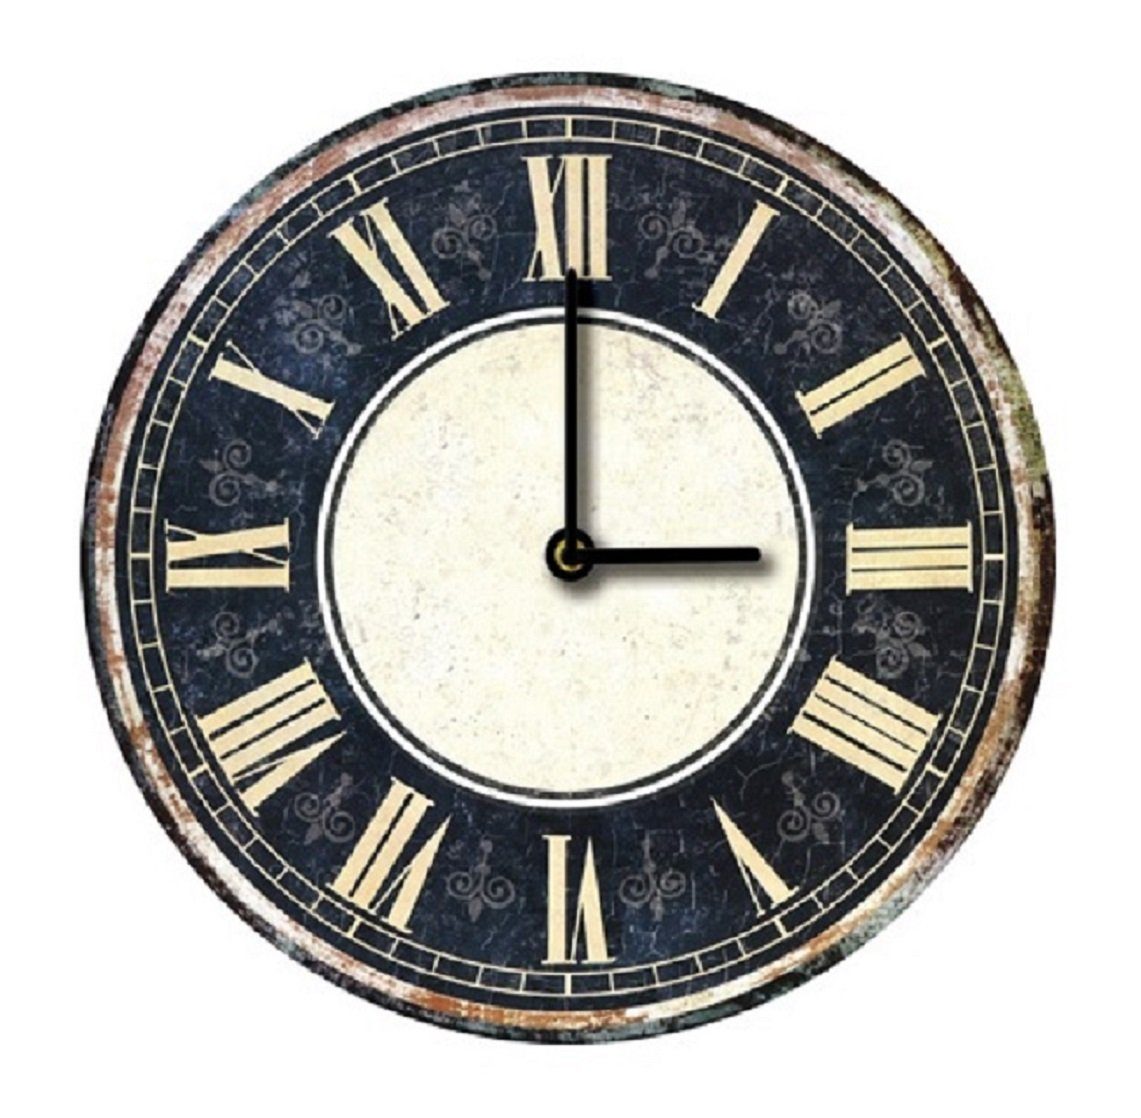 K&L Wall Art Wanduhr Metall Wanduhr 46cm groß Vintage Uhr rotierende  goldene Zahnräder (Antik römische Ziffern Uhrwerk leise)